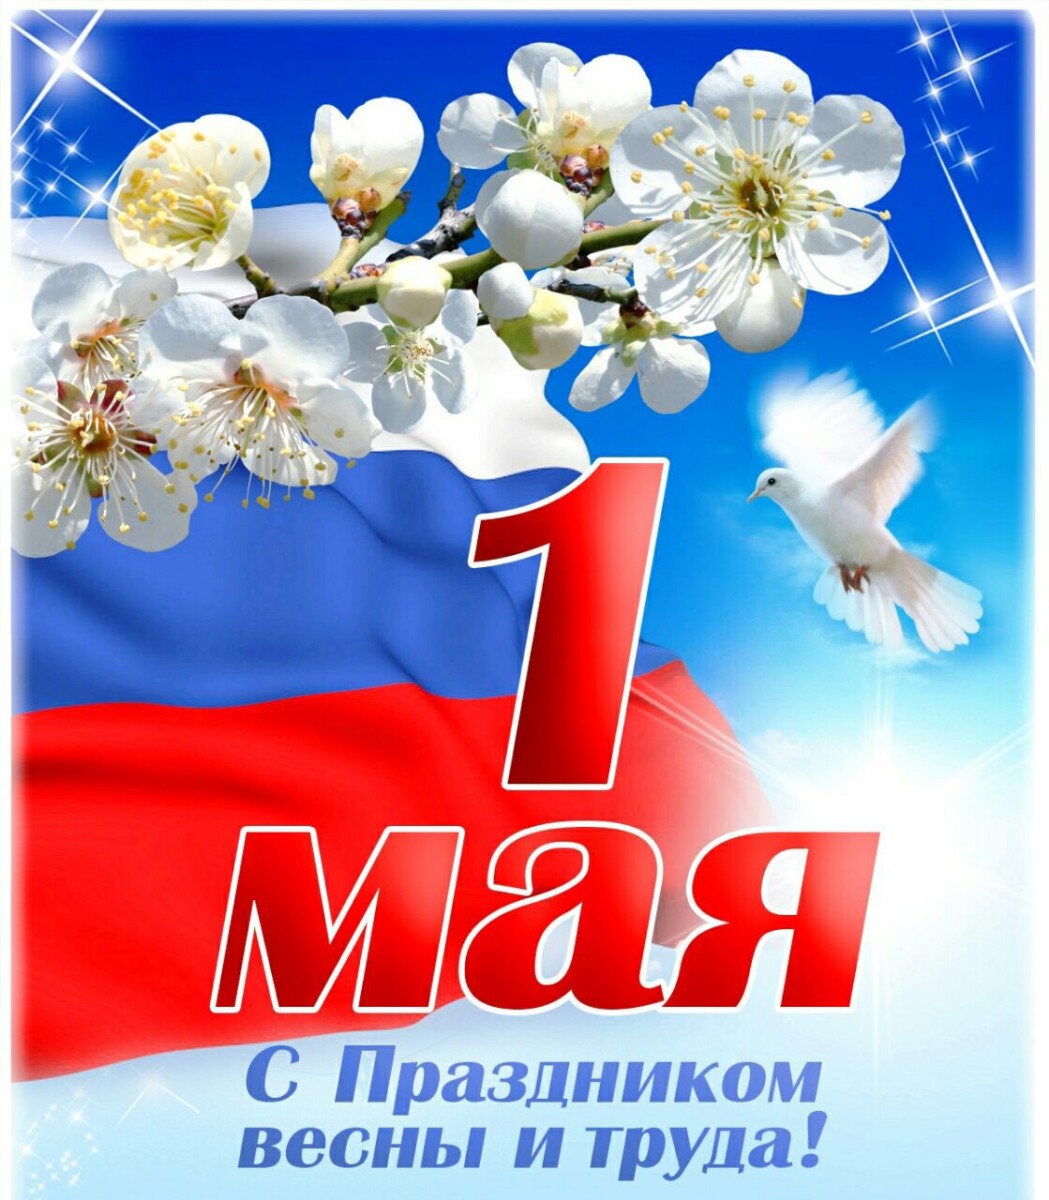 Глава администрации Элисты Шафран Тепшинов поздравил горожан с Праздником весны и труда